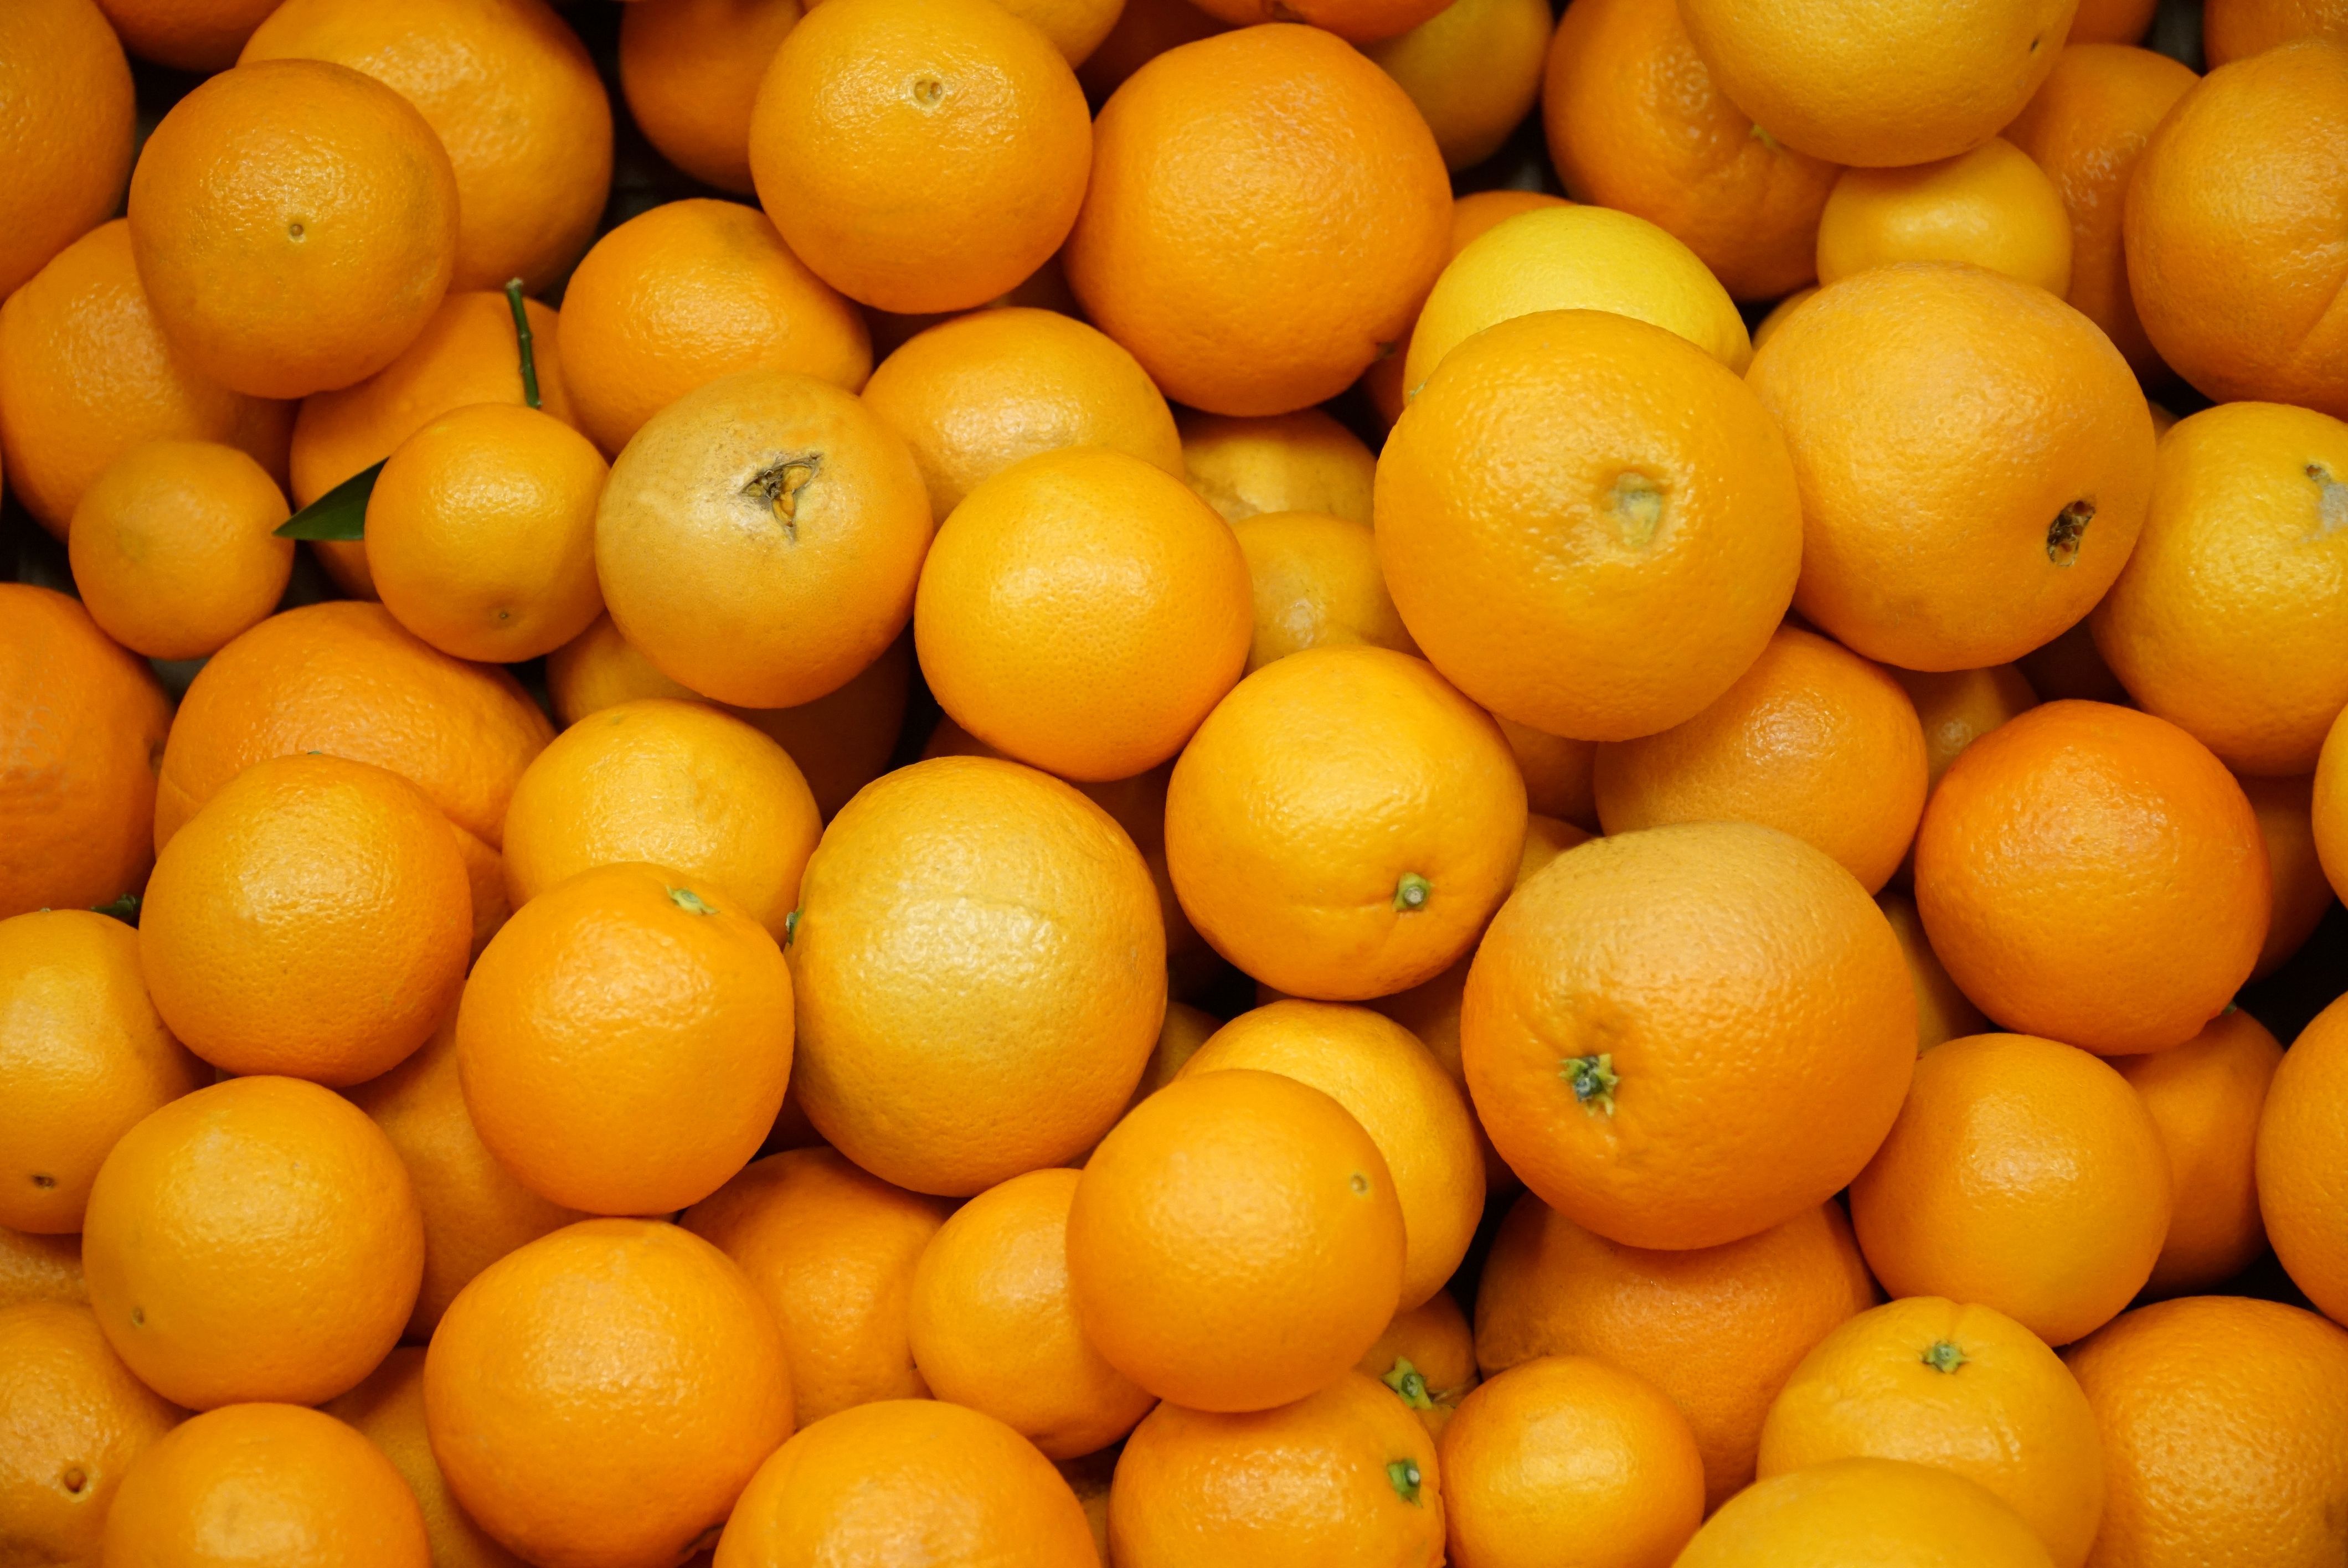 Background image of oranges